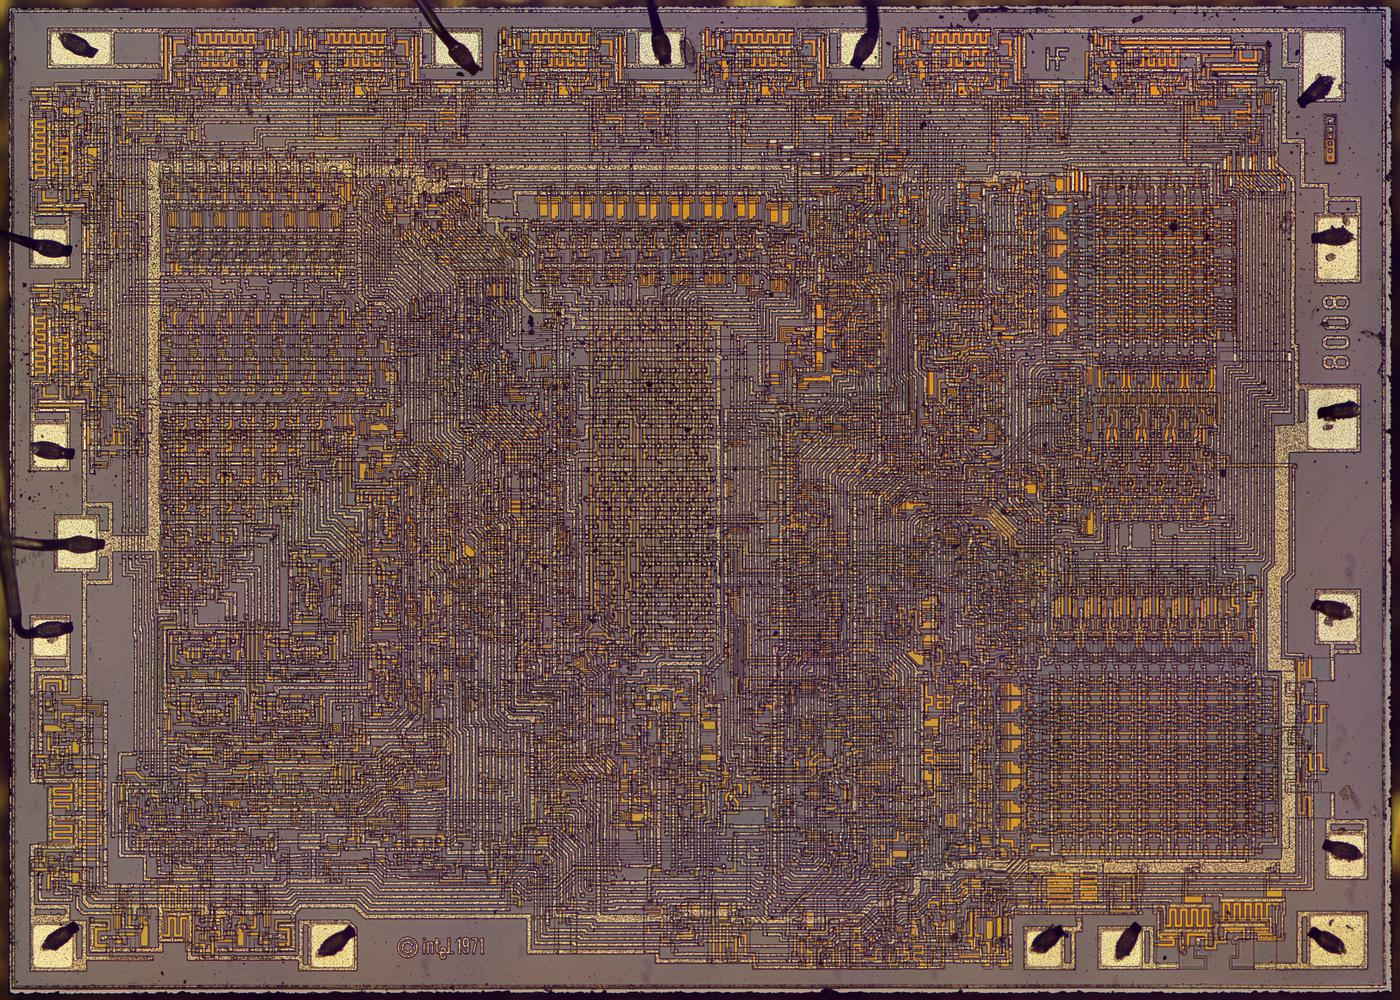 Инженерный анализ схемы ускоренного переноса процессора Intel 8008 - 9